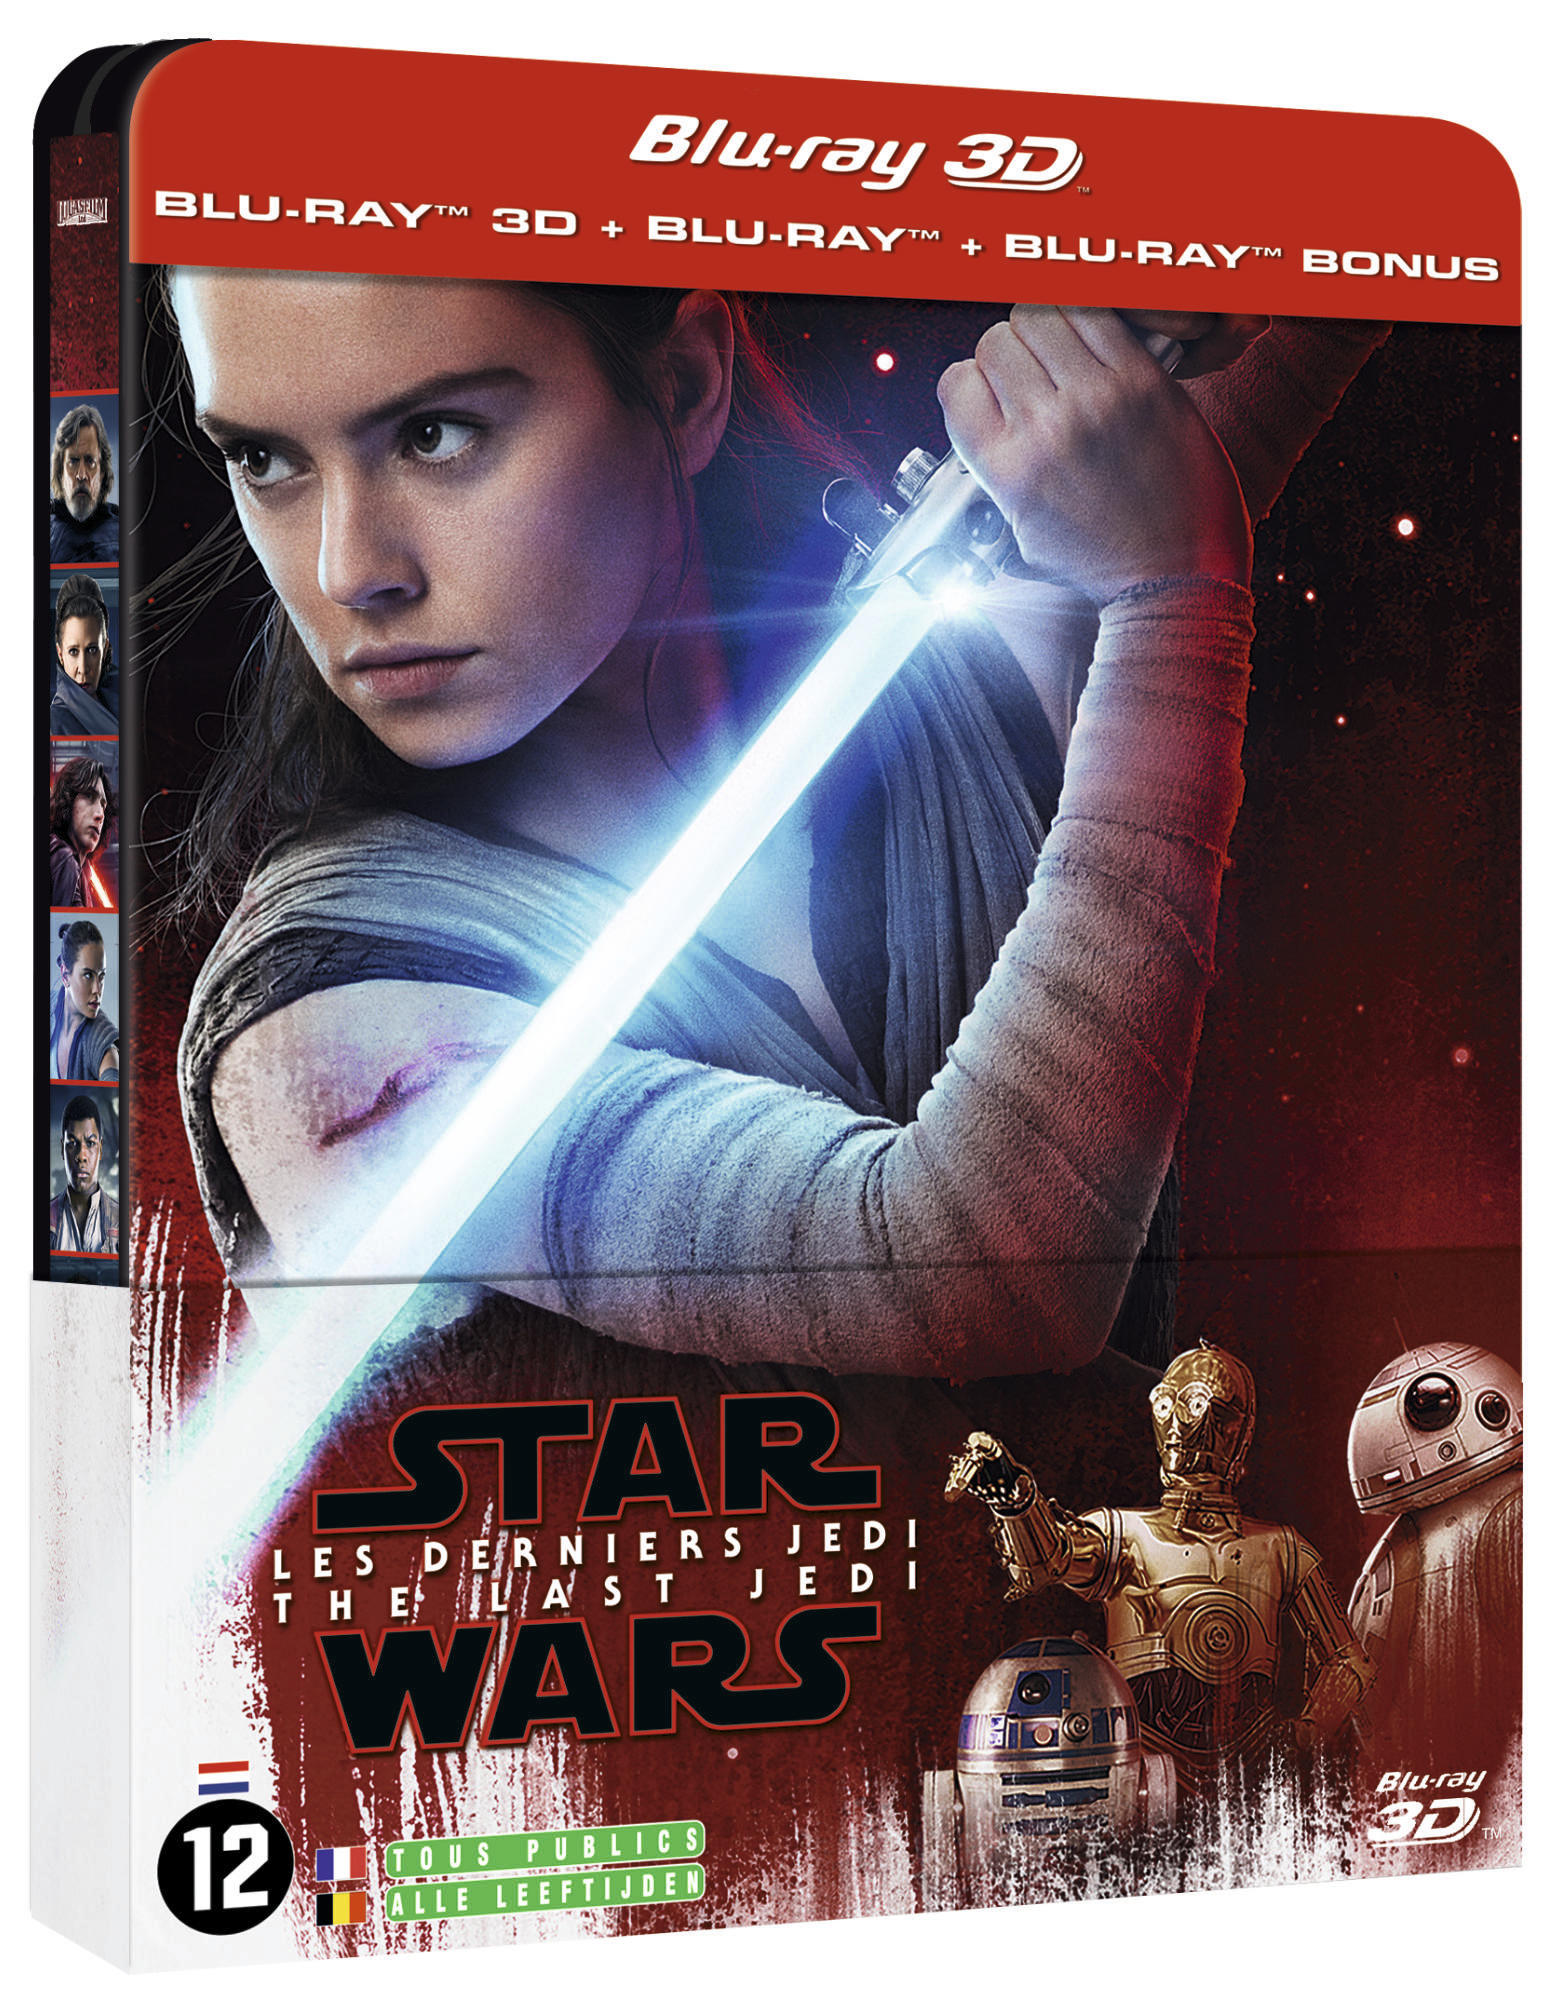 Star Wars : Les Derniers Jedi - SteelBook Blu-ray 3D/2D/bonus